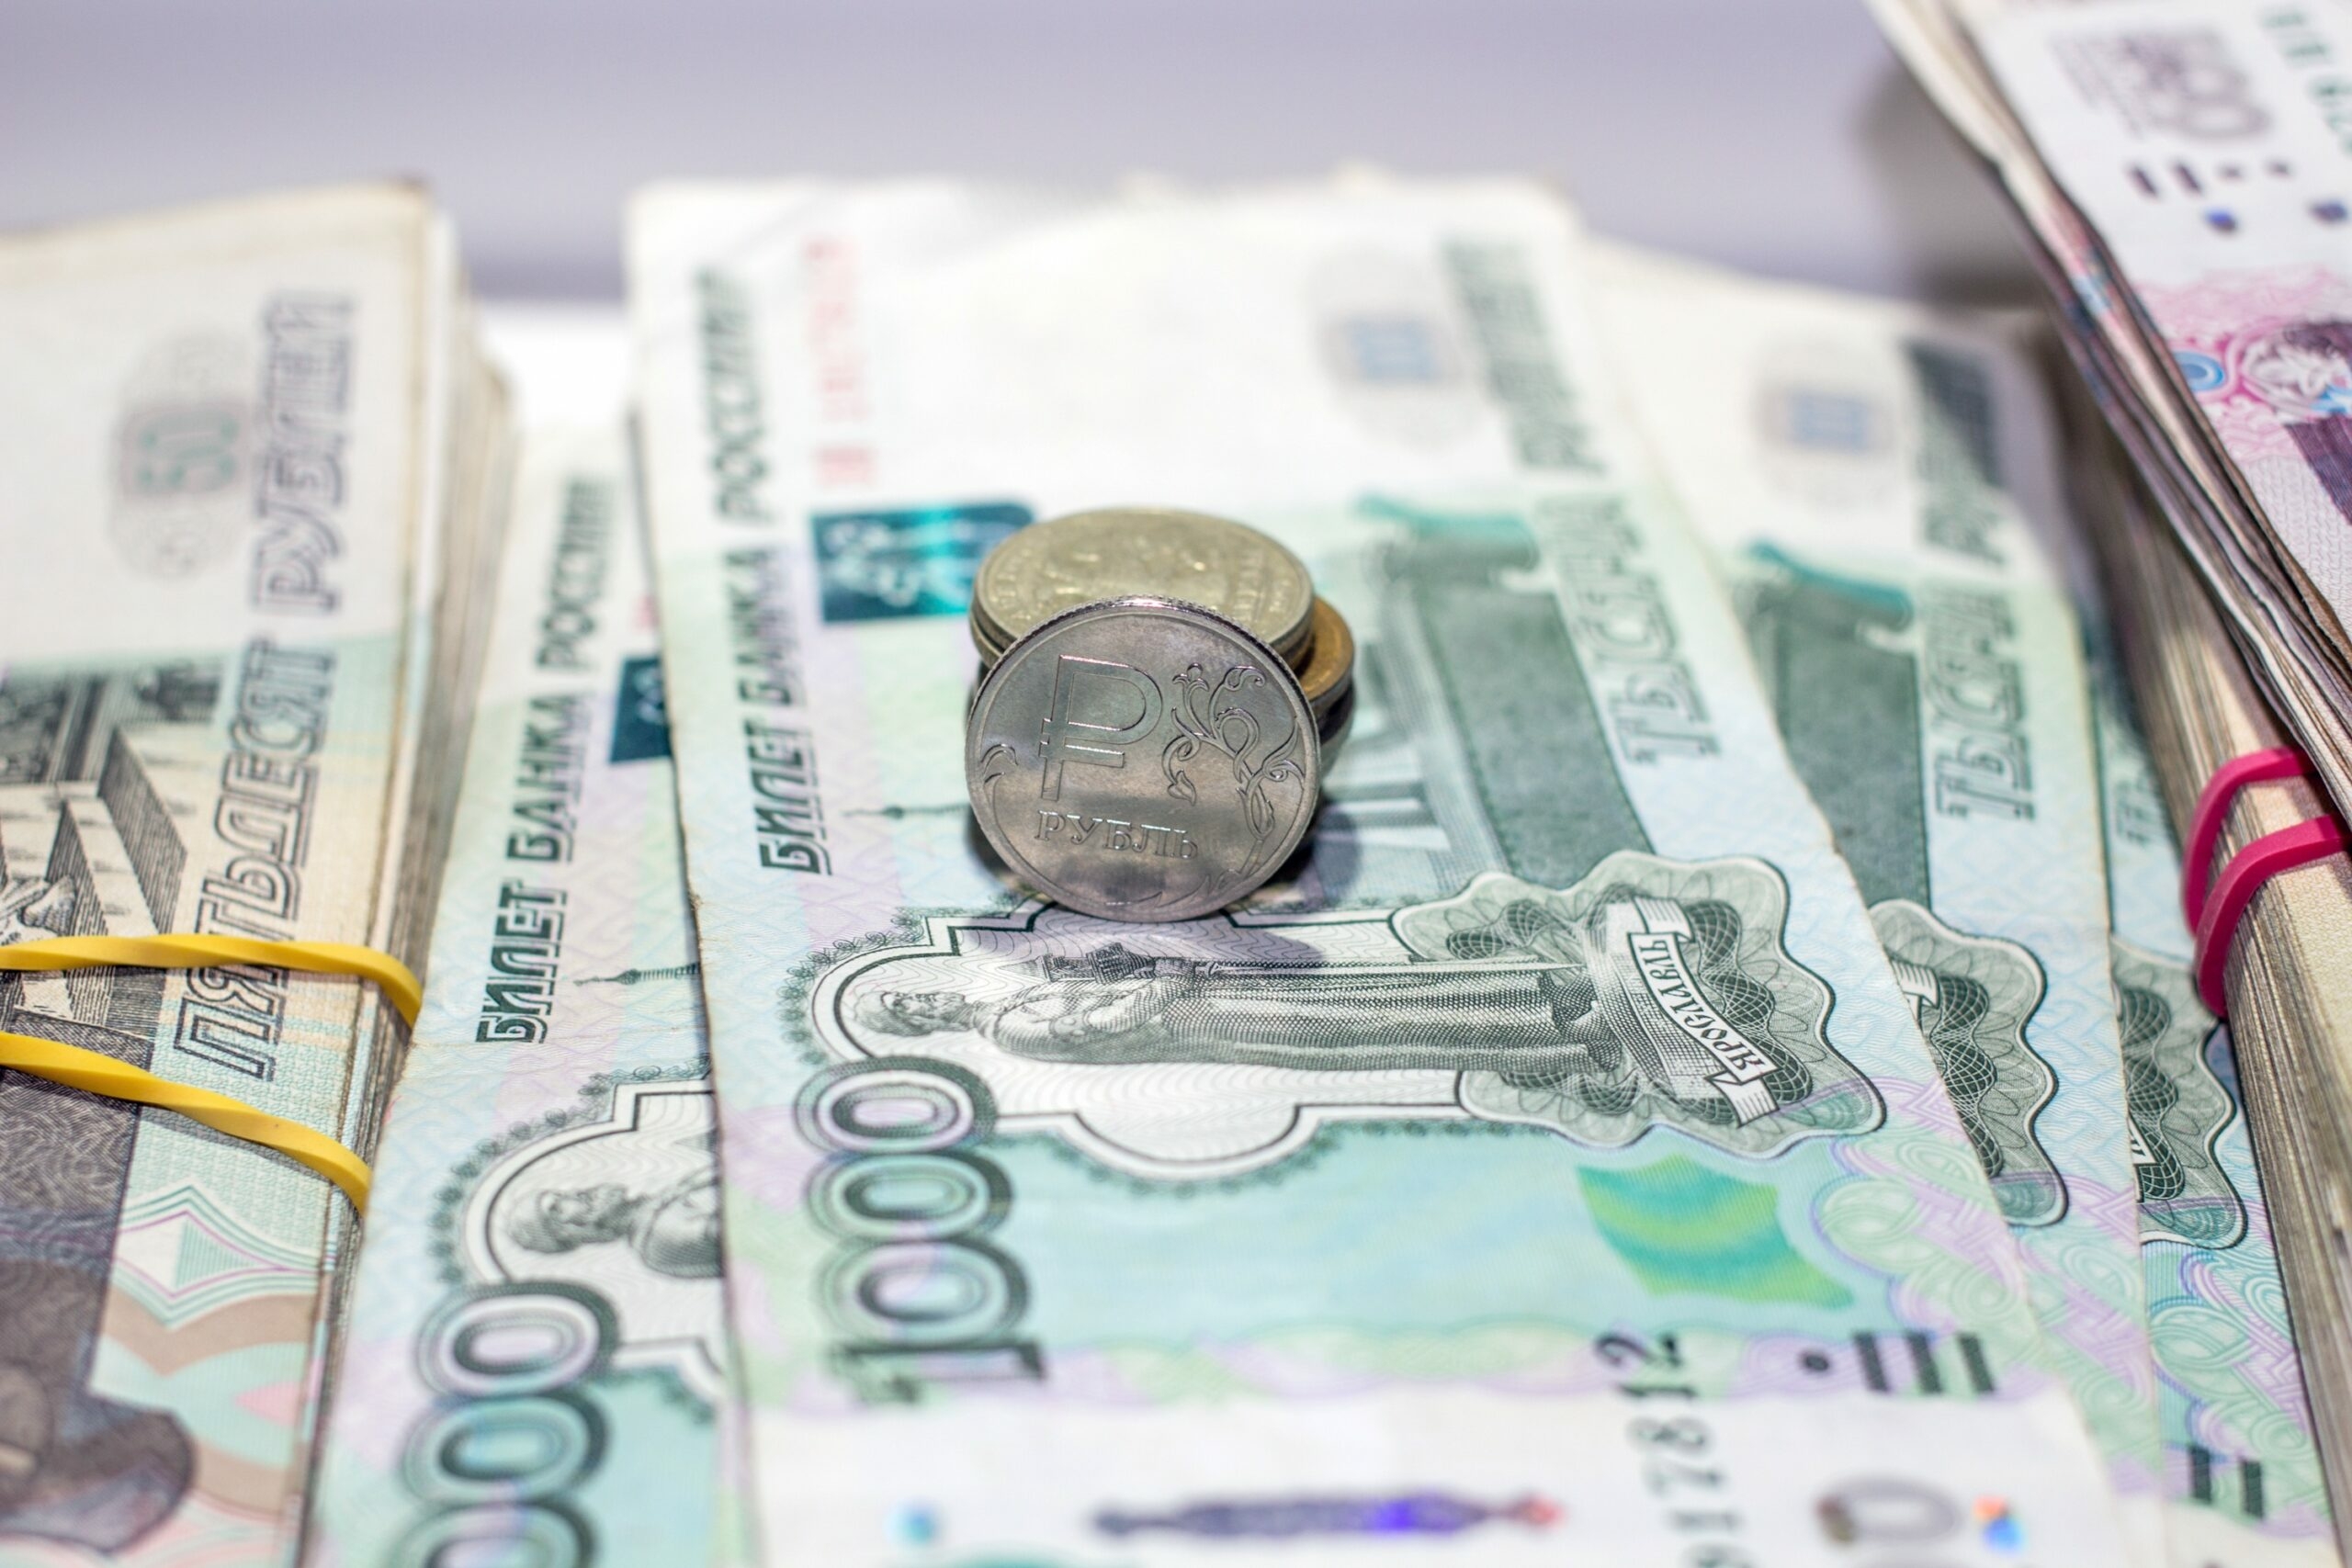 Деньги получат не все: СФР переведет россиянам на карты до 13,5 тысяч рублей